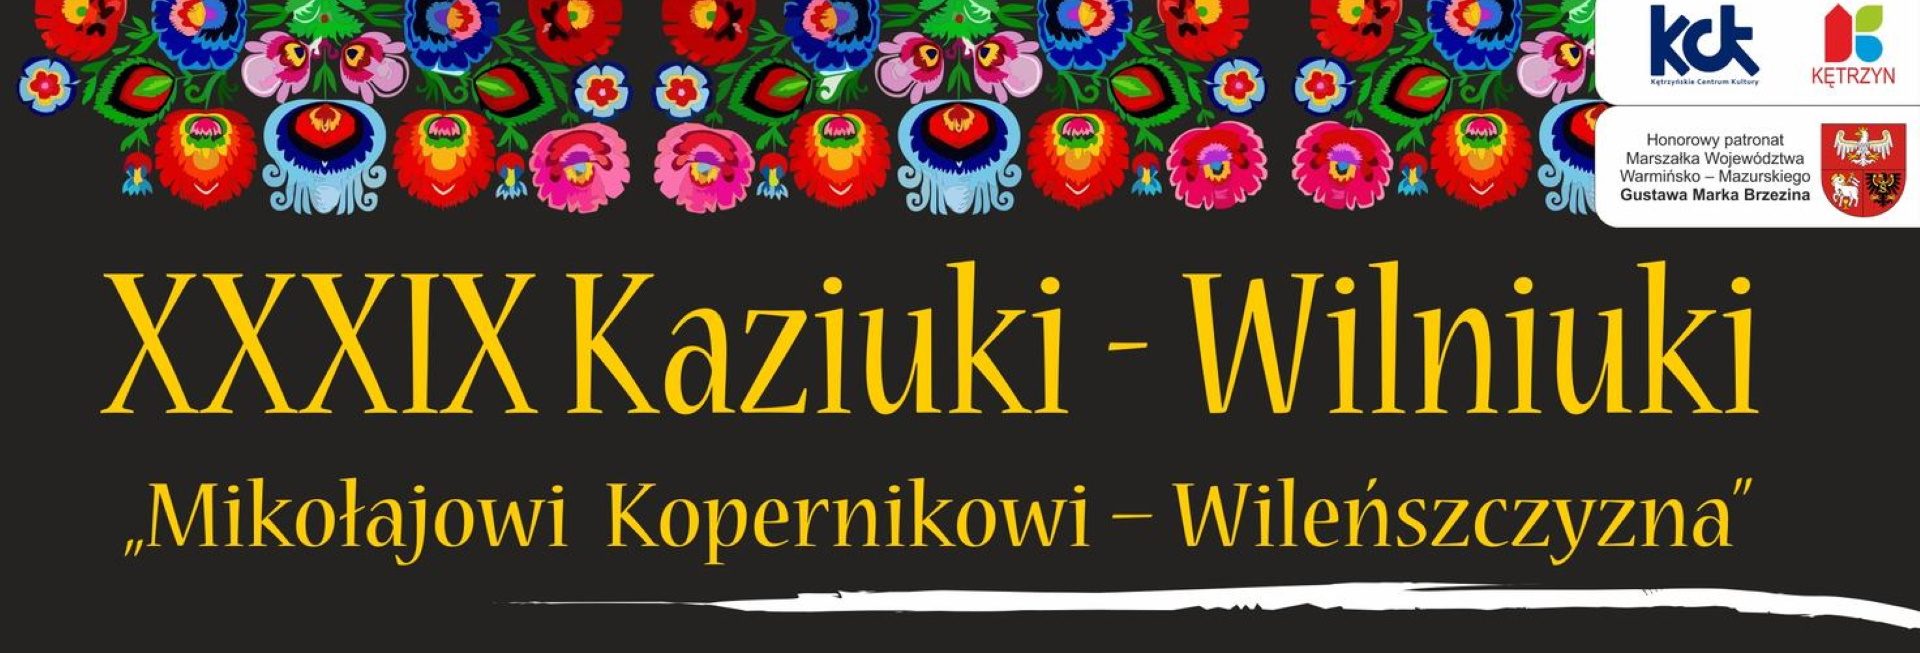 Plakat zapraszający w piątek 10 marca 2023 r. do Kętrzyna na 39. edycję festiwalu kultury Wileńskiej Kaziuki-Wilniuki Kętrzyn 2023.